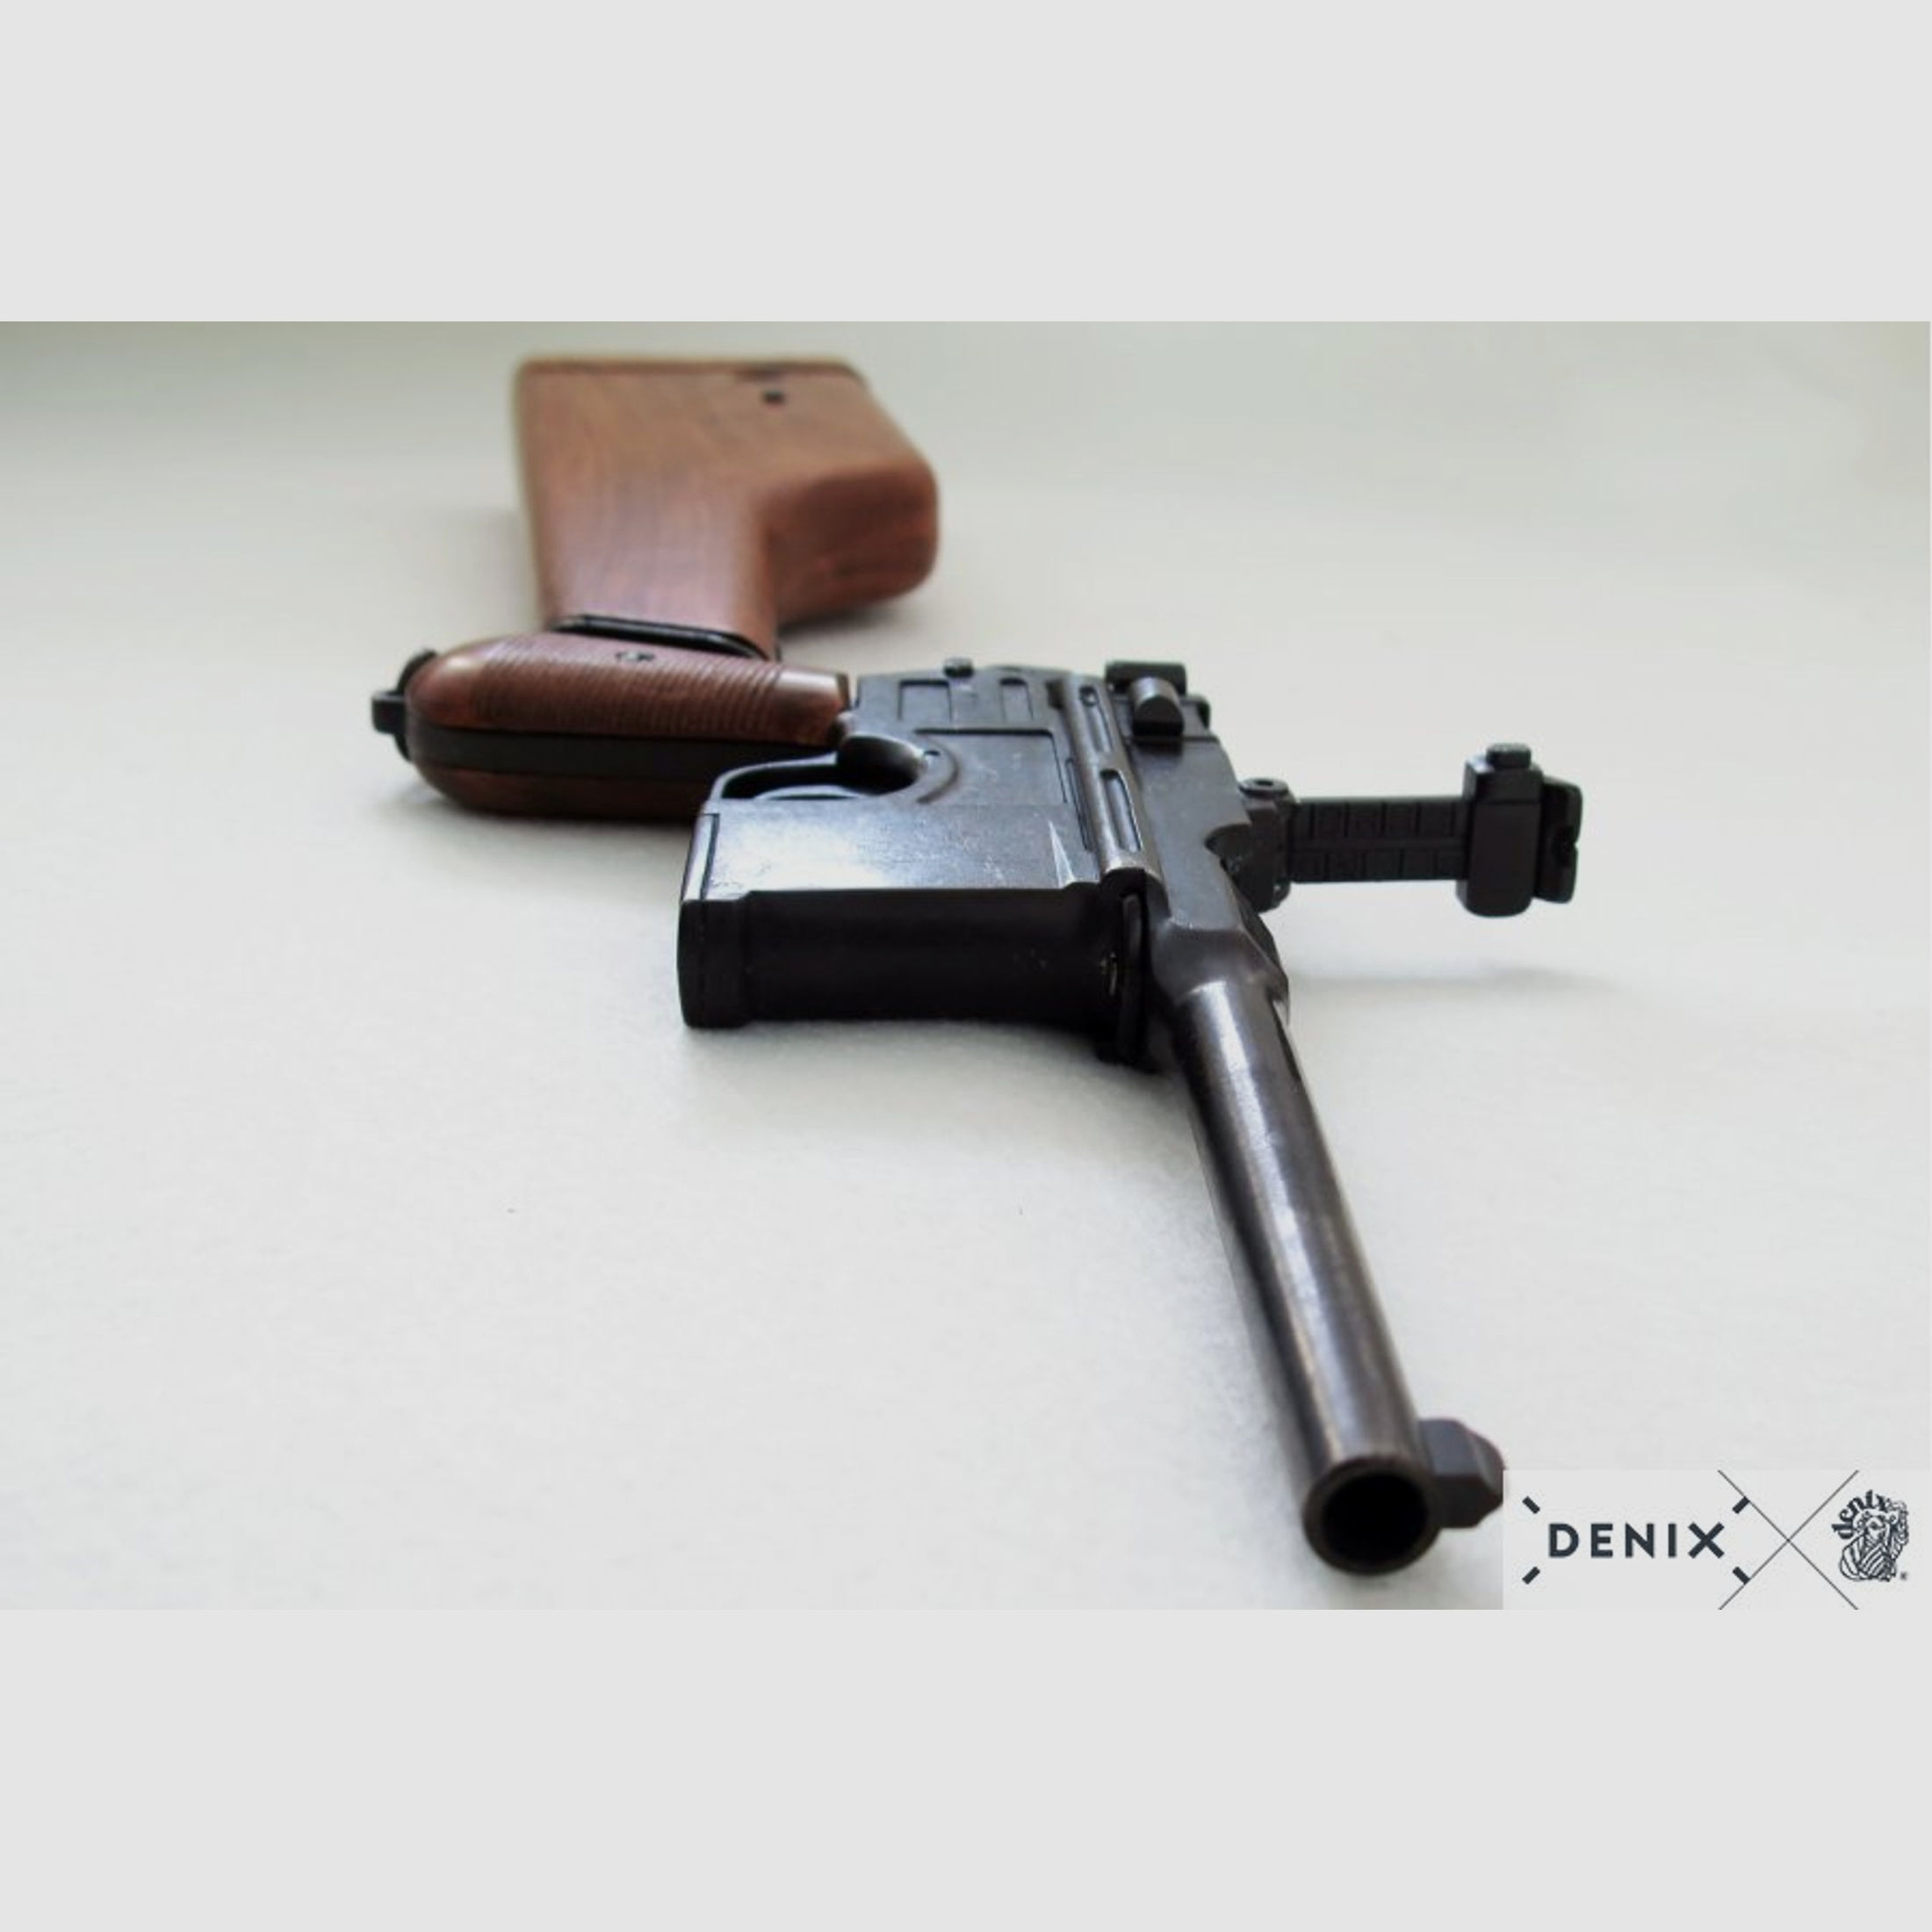 Mauserpistole C96 mit Gewehrschaft aus Holz, Deutschland 1896 | 88606